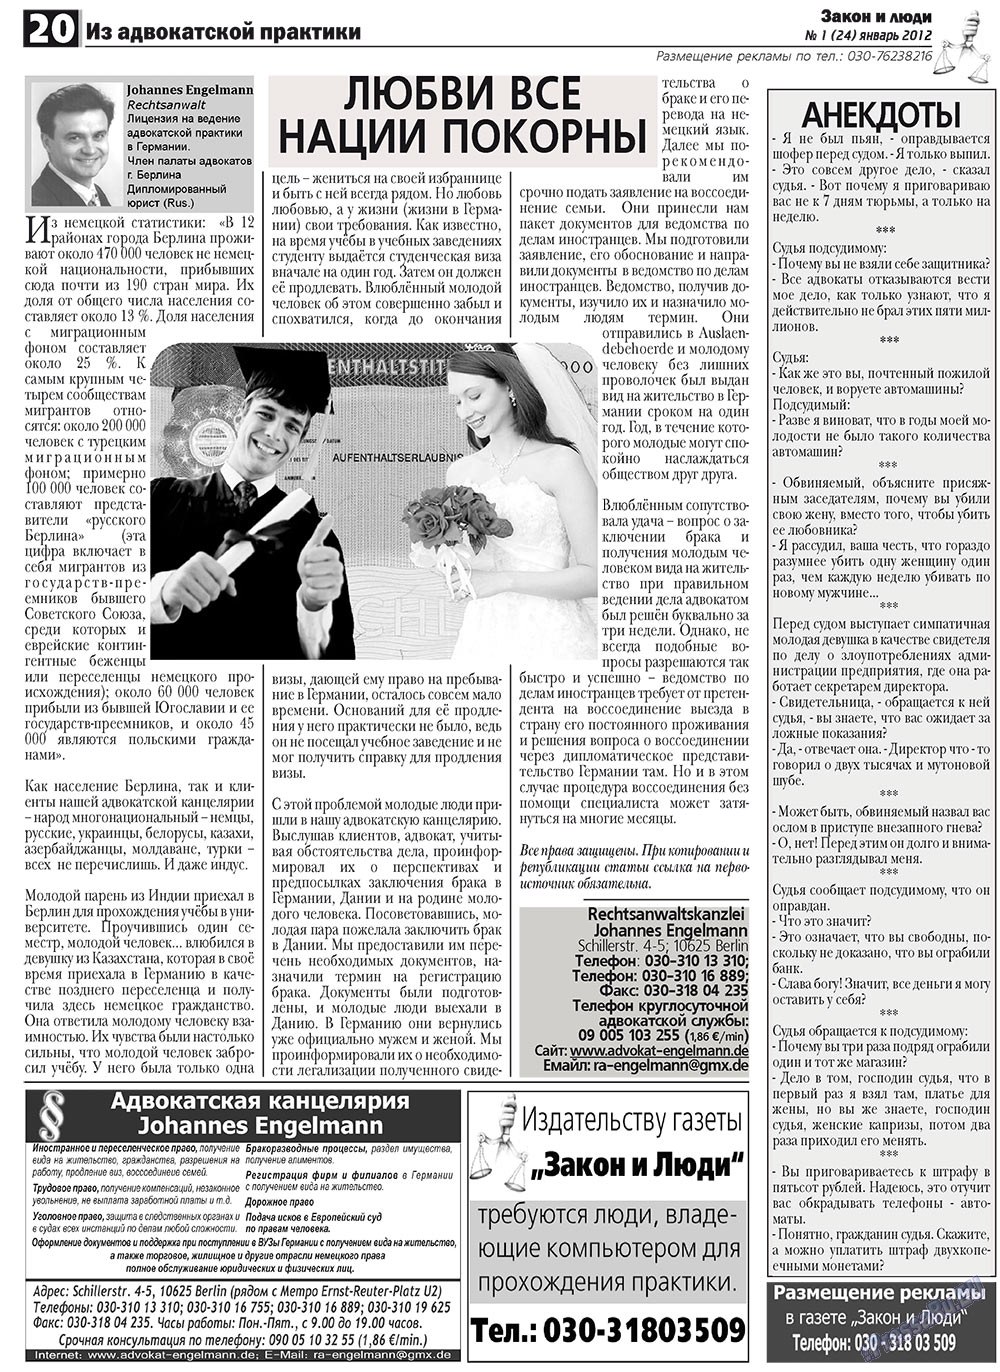 Закон и люди, газета. 2012 №1 стр.20